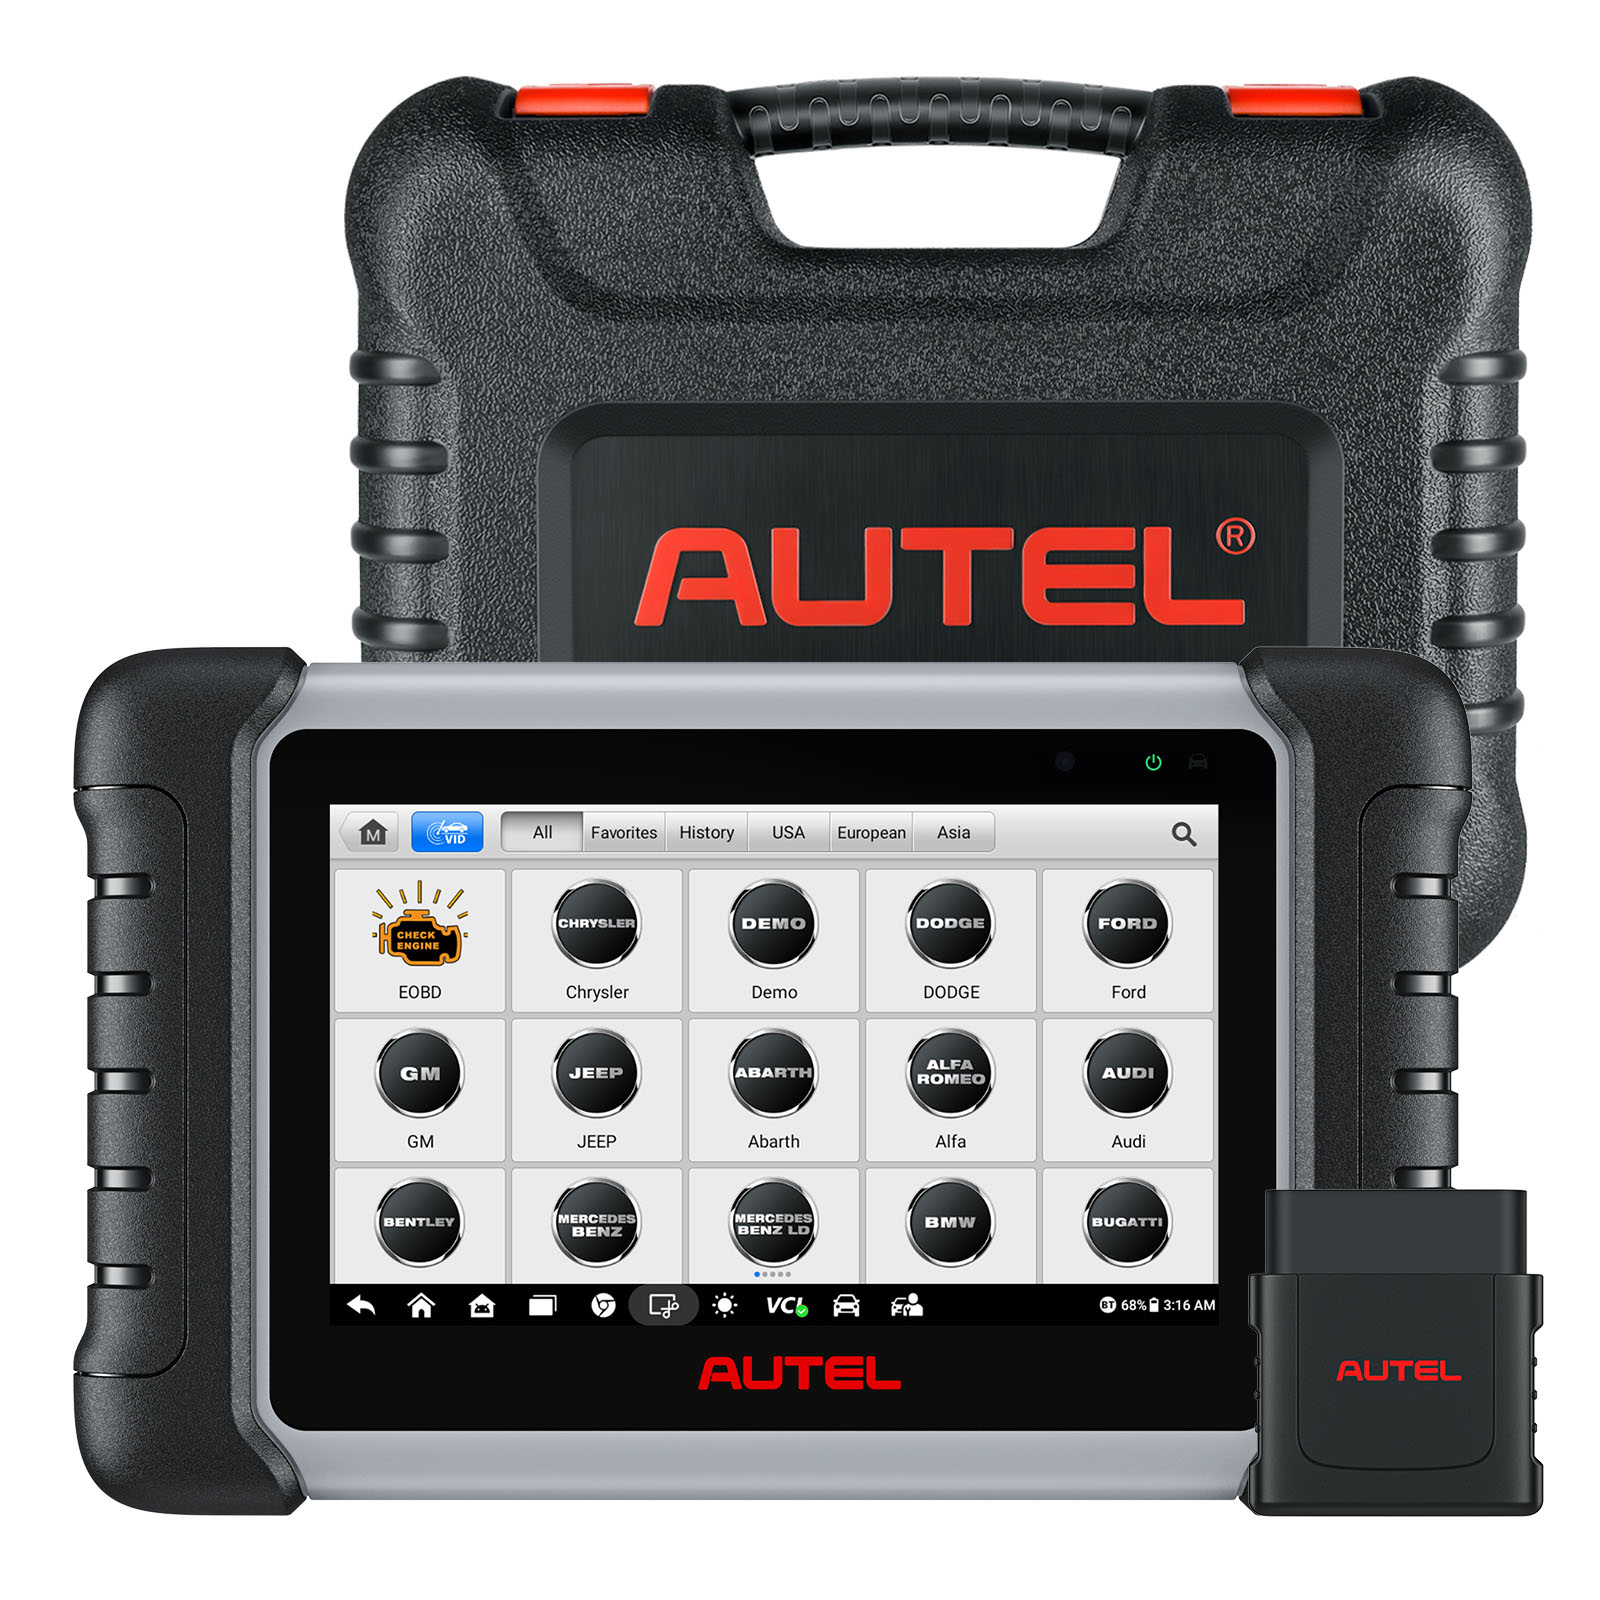  $639 AUTEL MP808S Kit Diagnostic Tool Full System